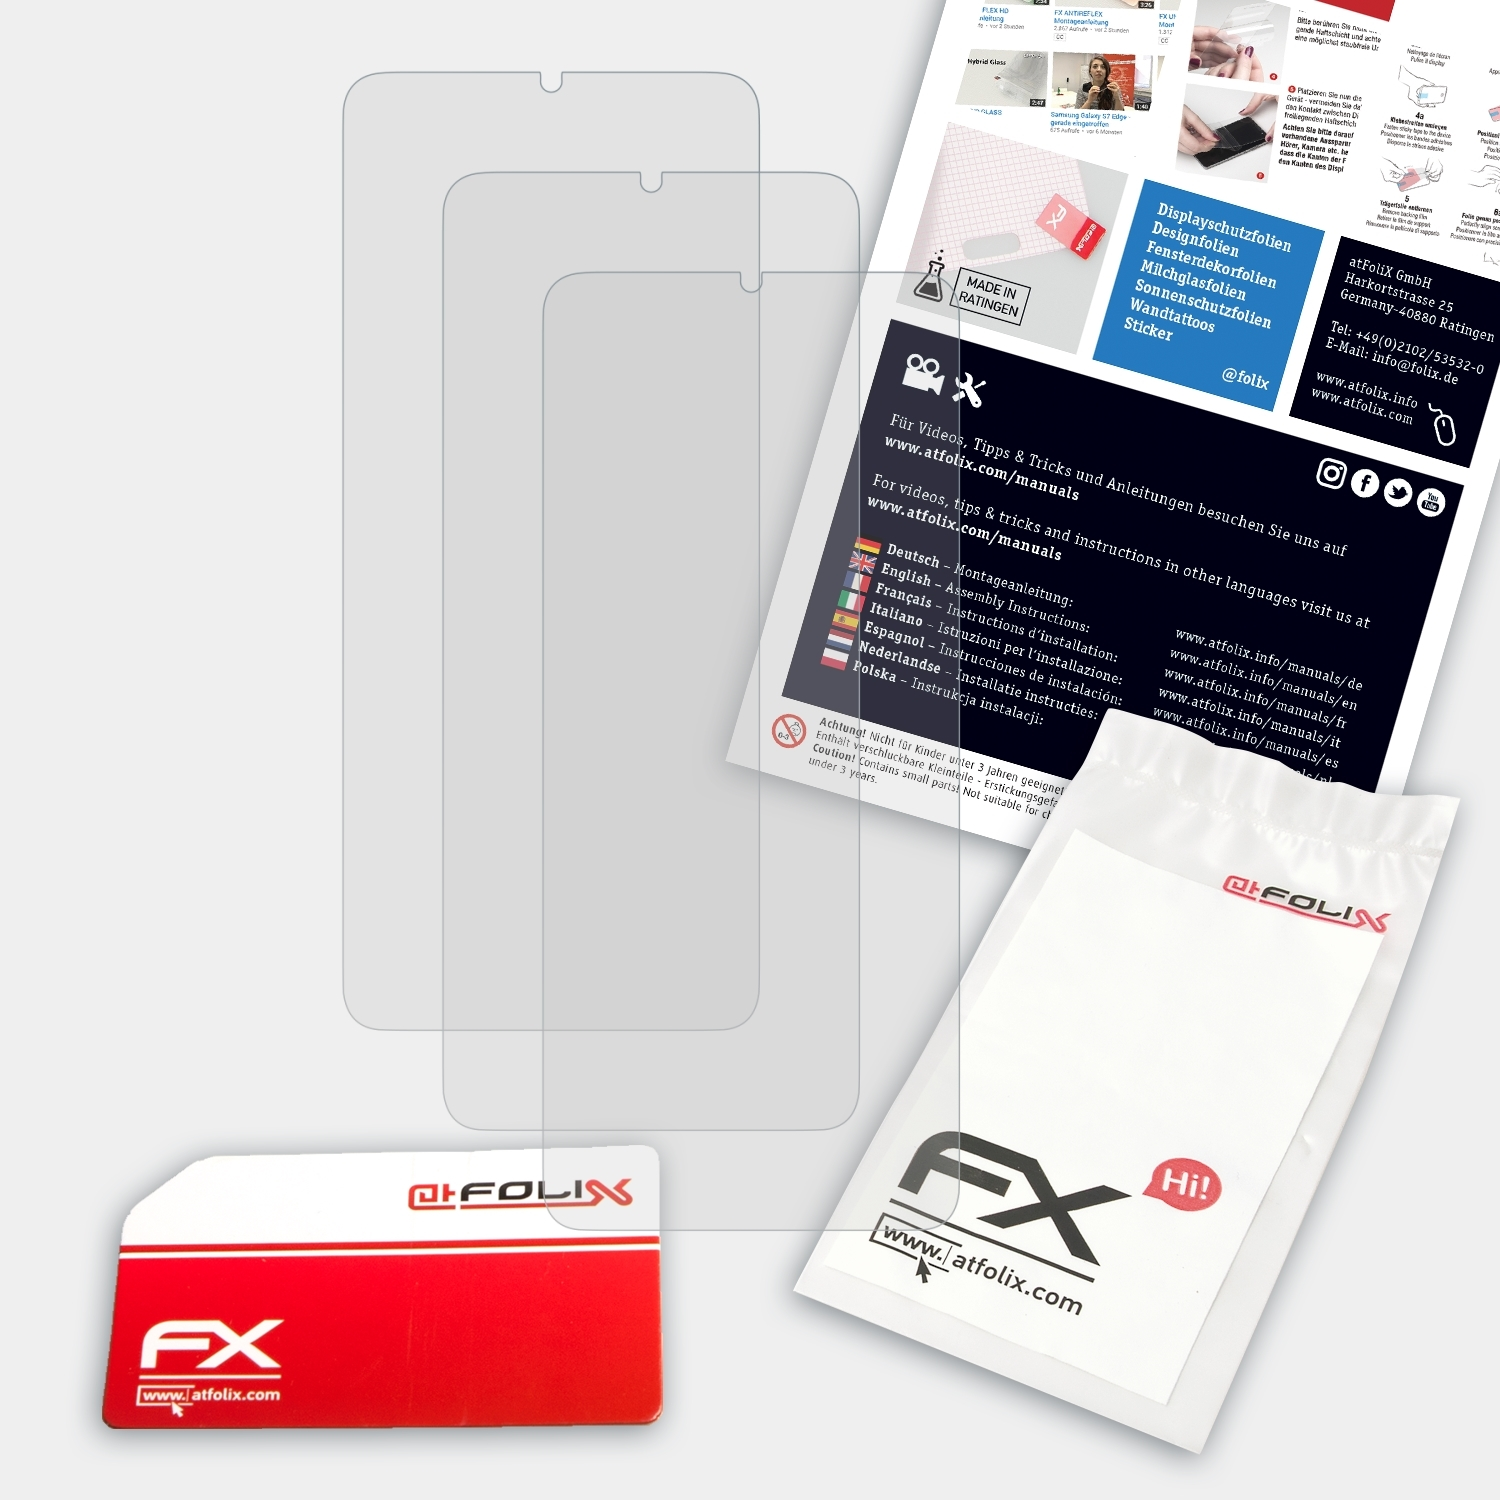 ATFOLIX 3x FX-Antireflex A22 Galaxy Samsung Displayschutz(für 4G)